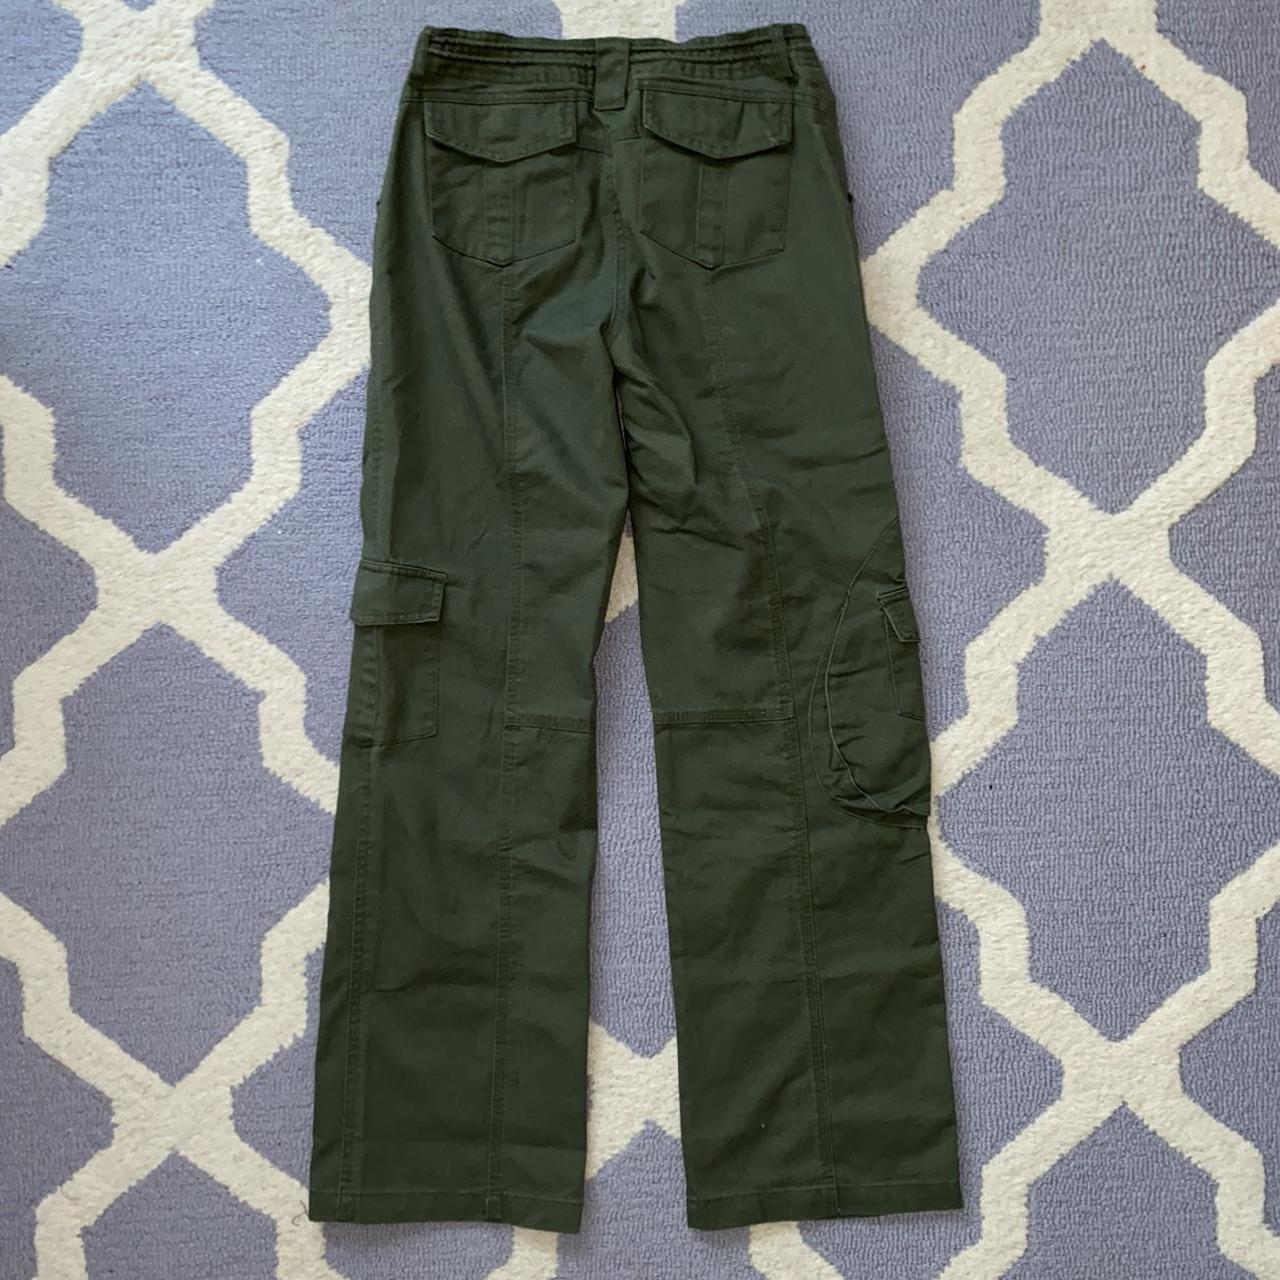 Brandy Melville Kim Cargo Pants Size: S fits... - Depop